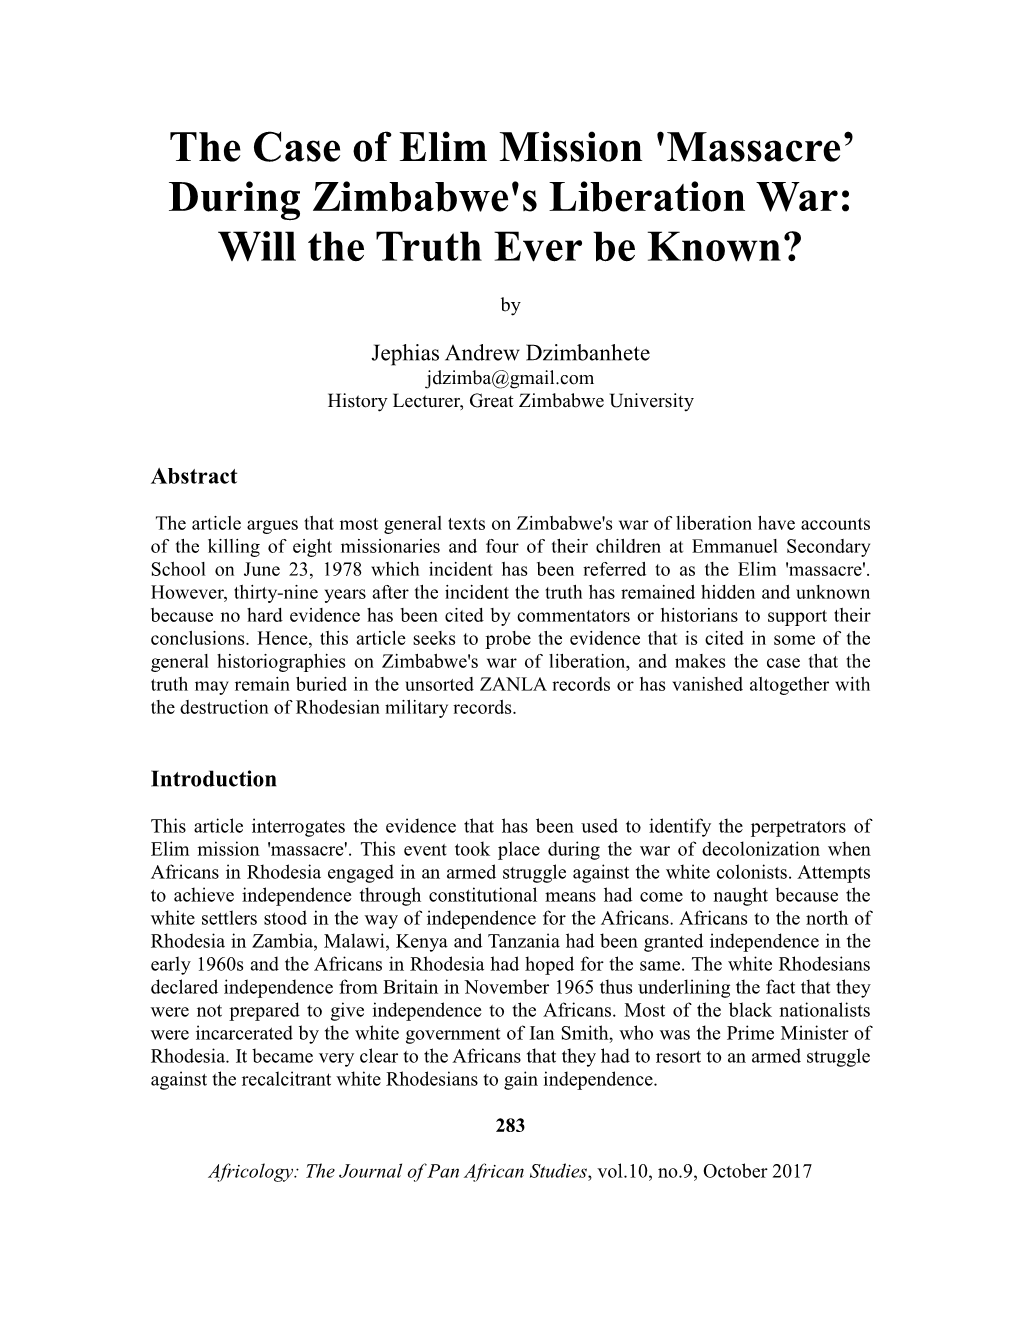 The Case of Elim Mission 'Massacre' During Zimbabwe's Liberation